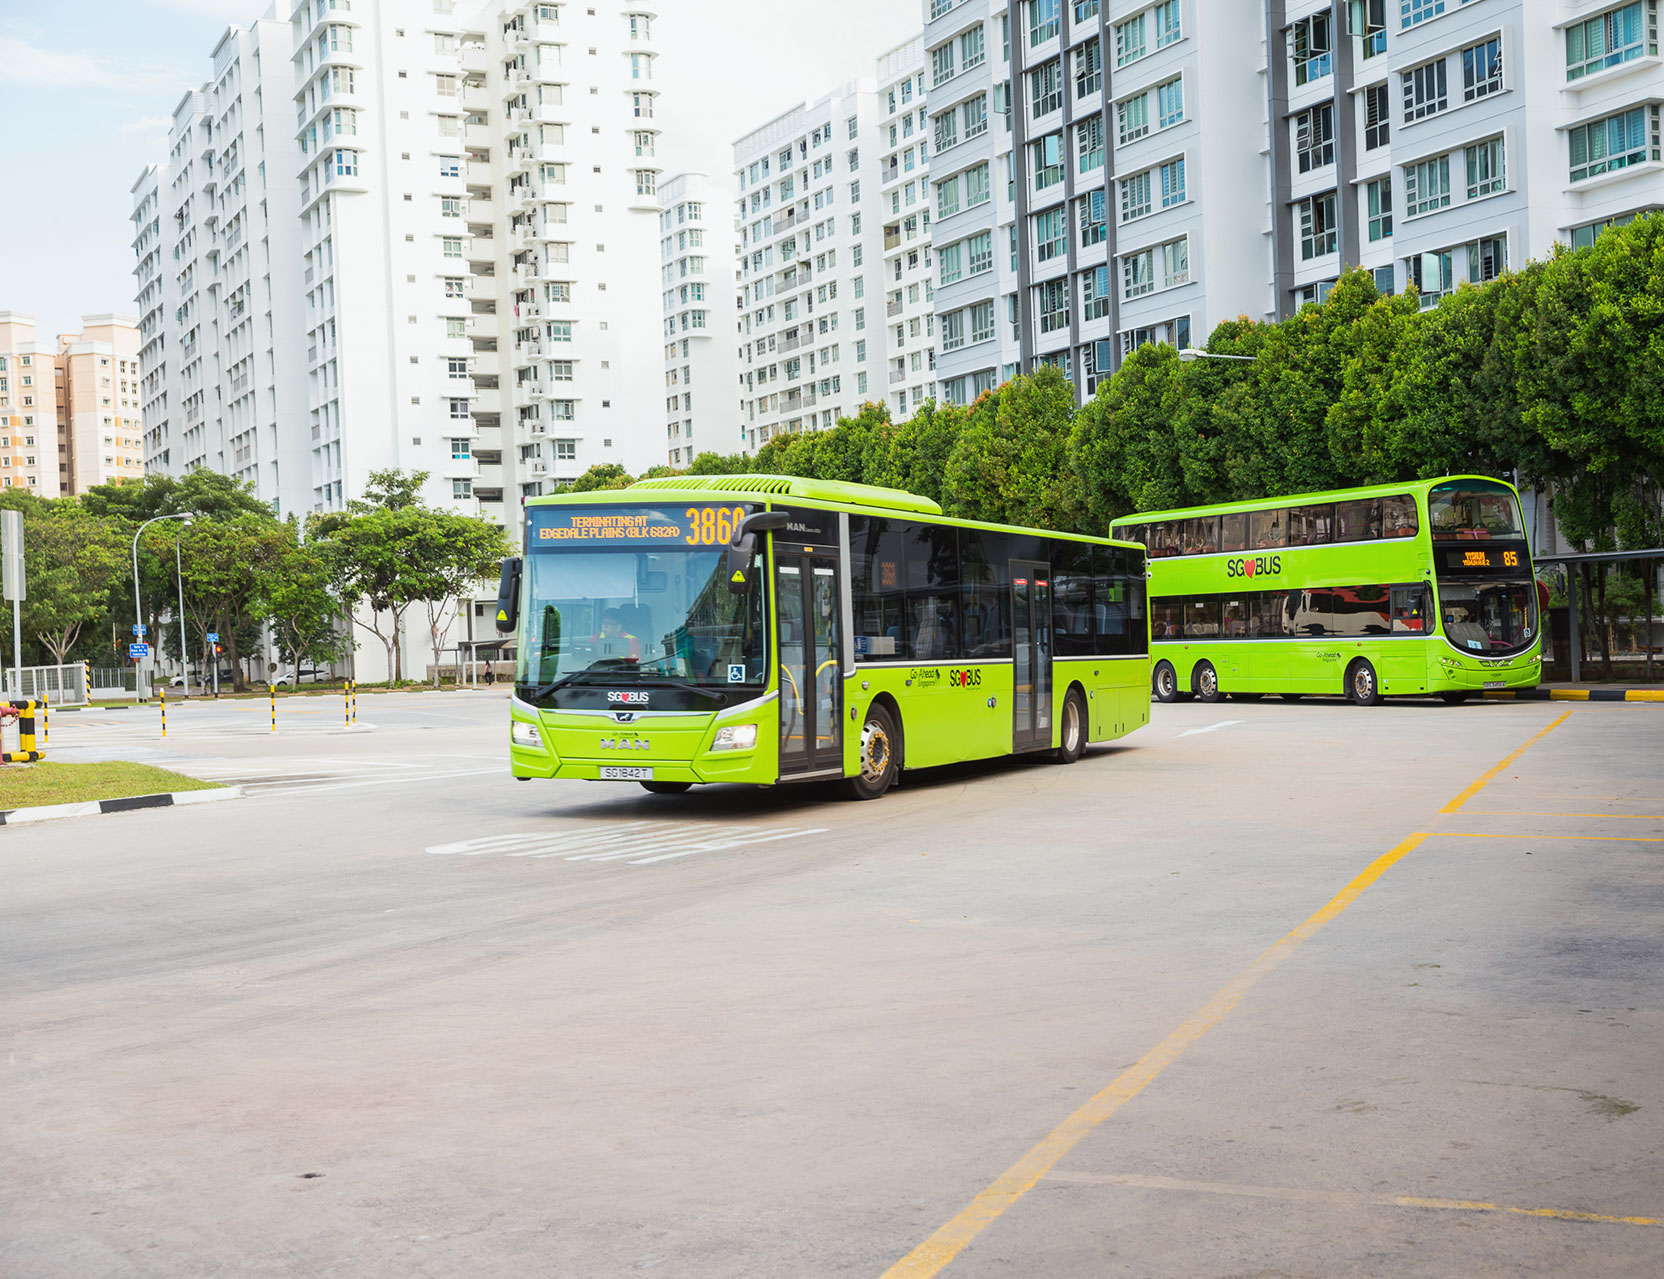 Route Amendment – Bus Service 84